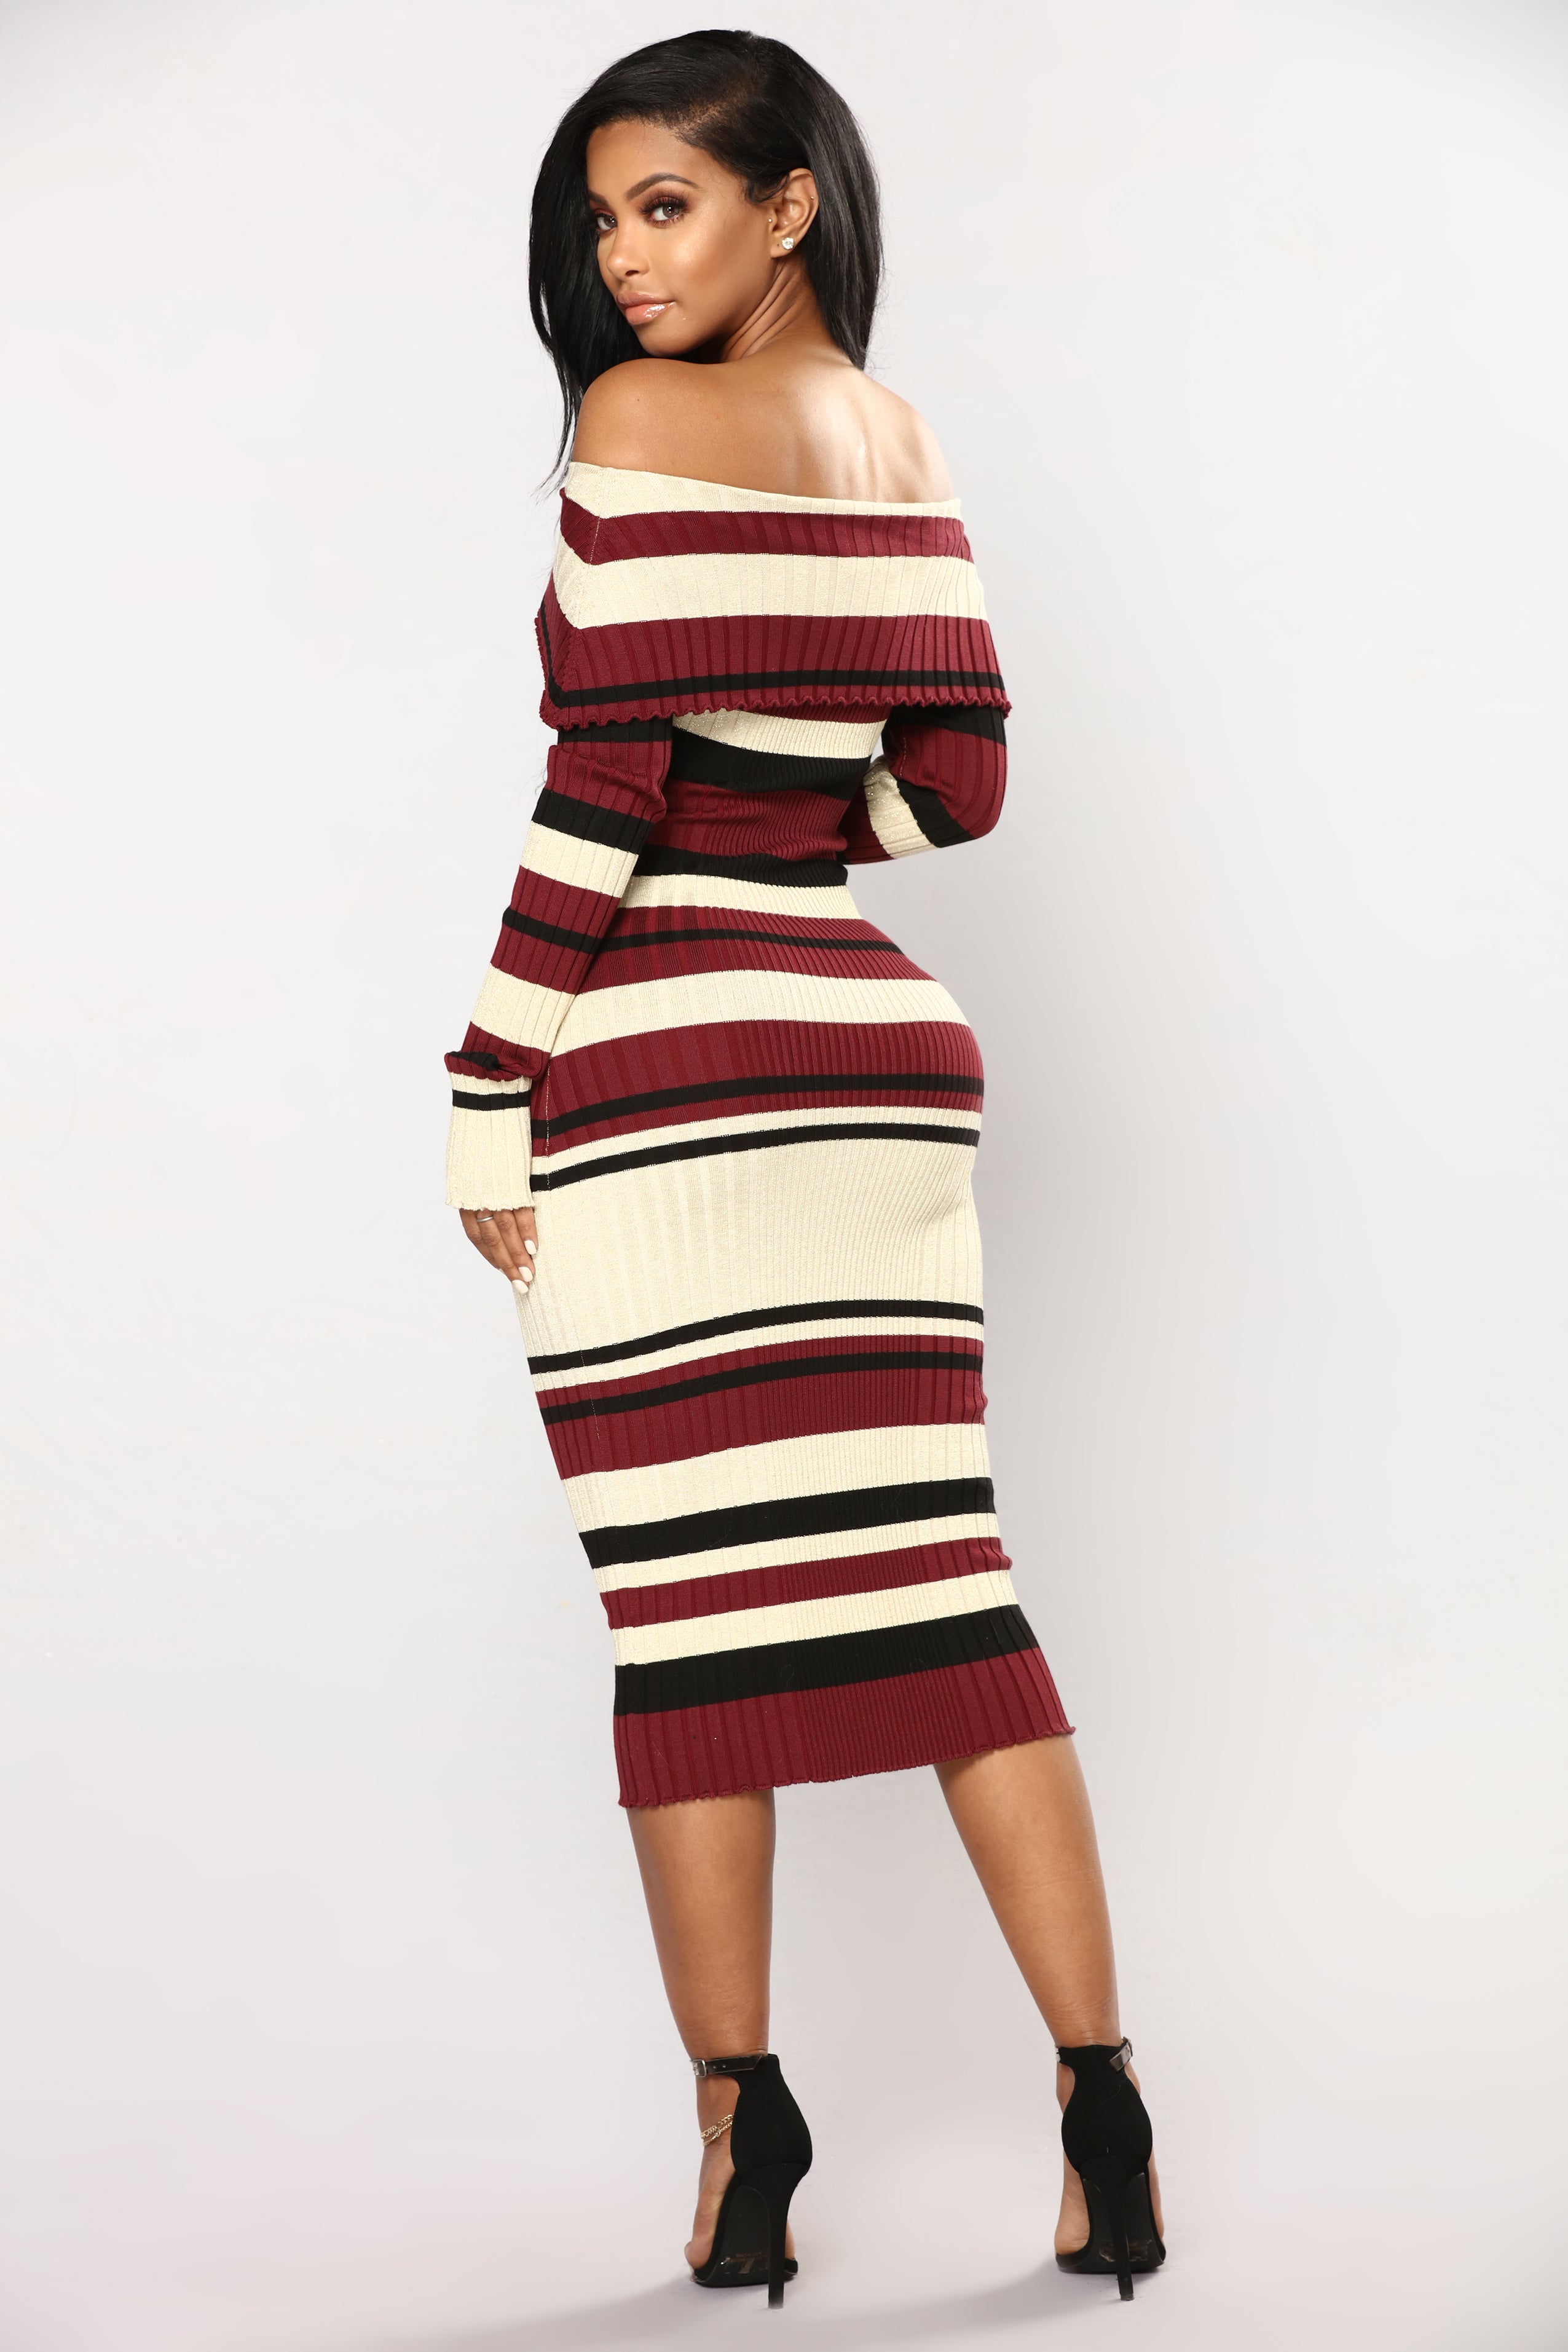 fashion nova knit dress